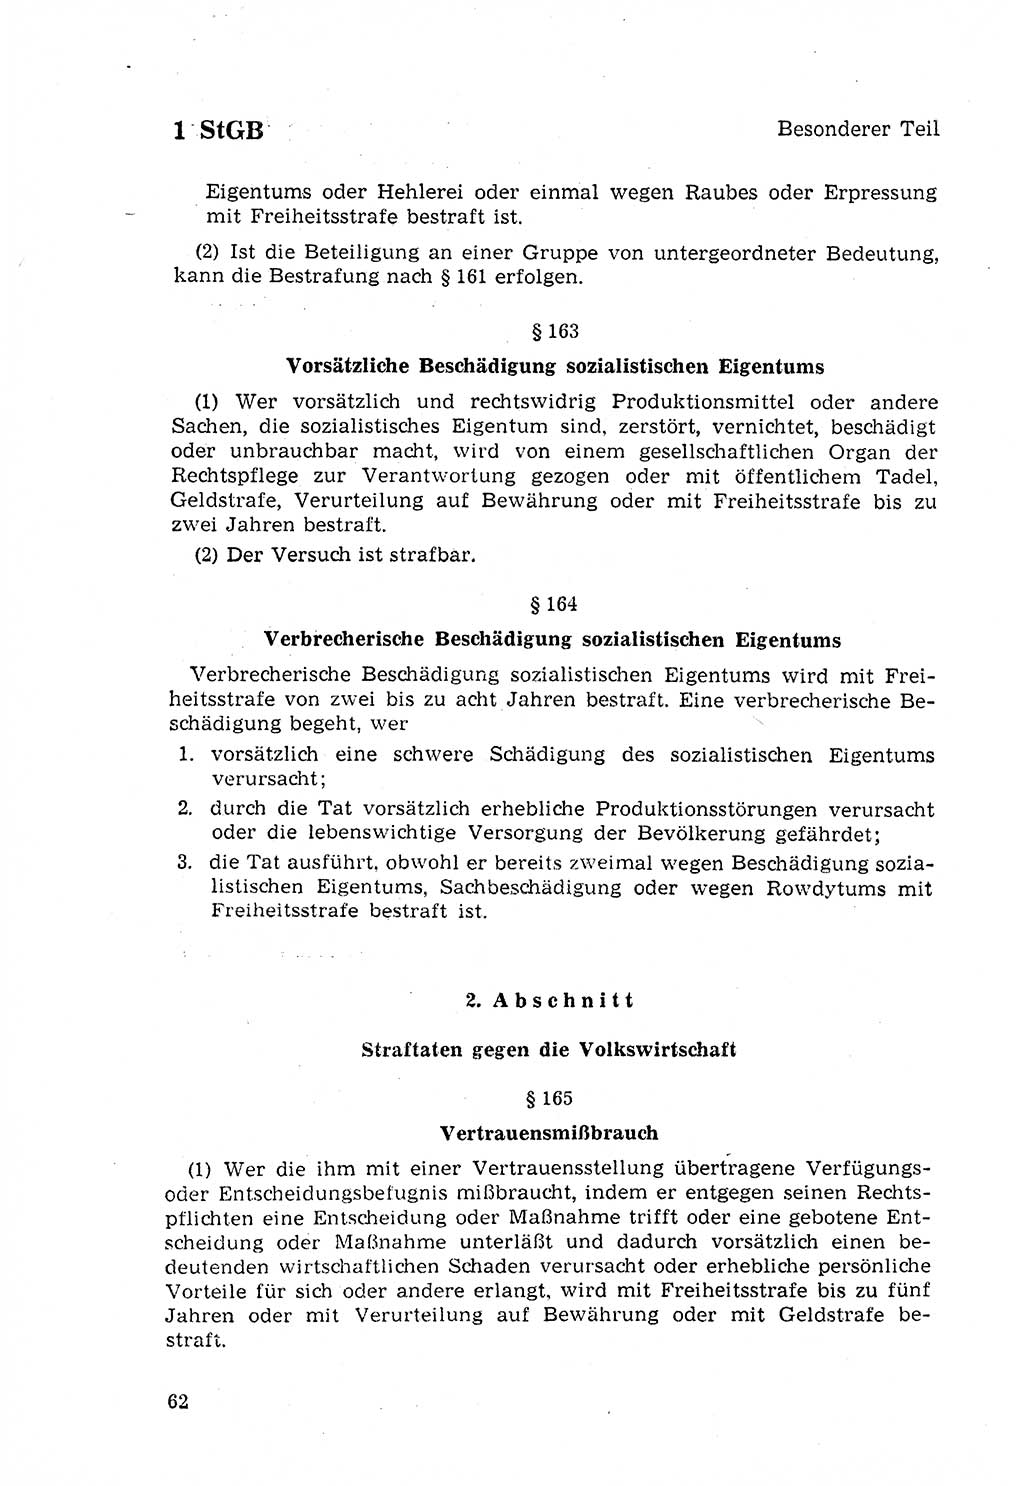 Strafgesetzbuch (StGB) der Deutschen Demokratischen Republik (DDR) 1968, Seite 62 (StGB DDR 1968, S. 62)